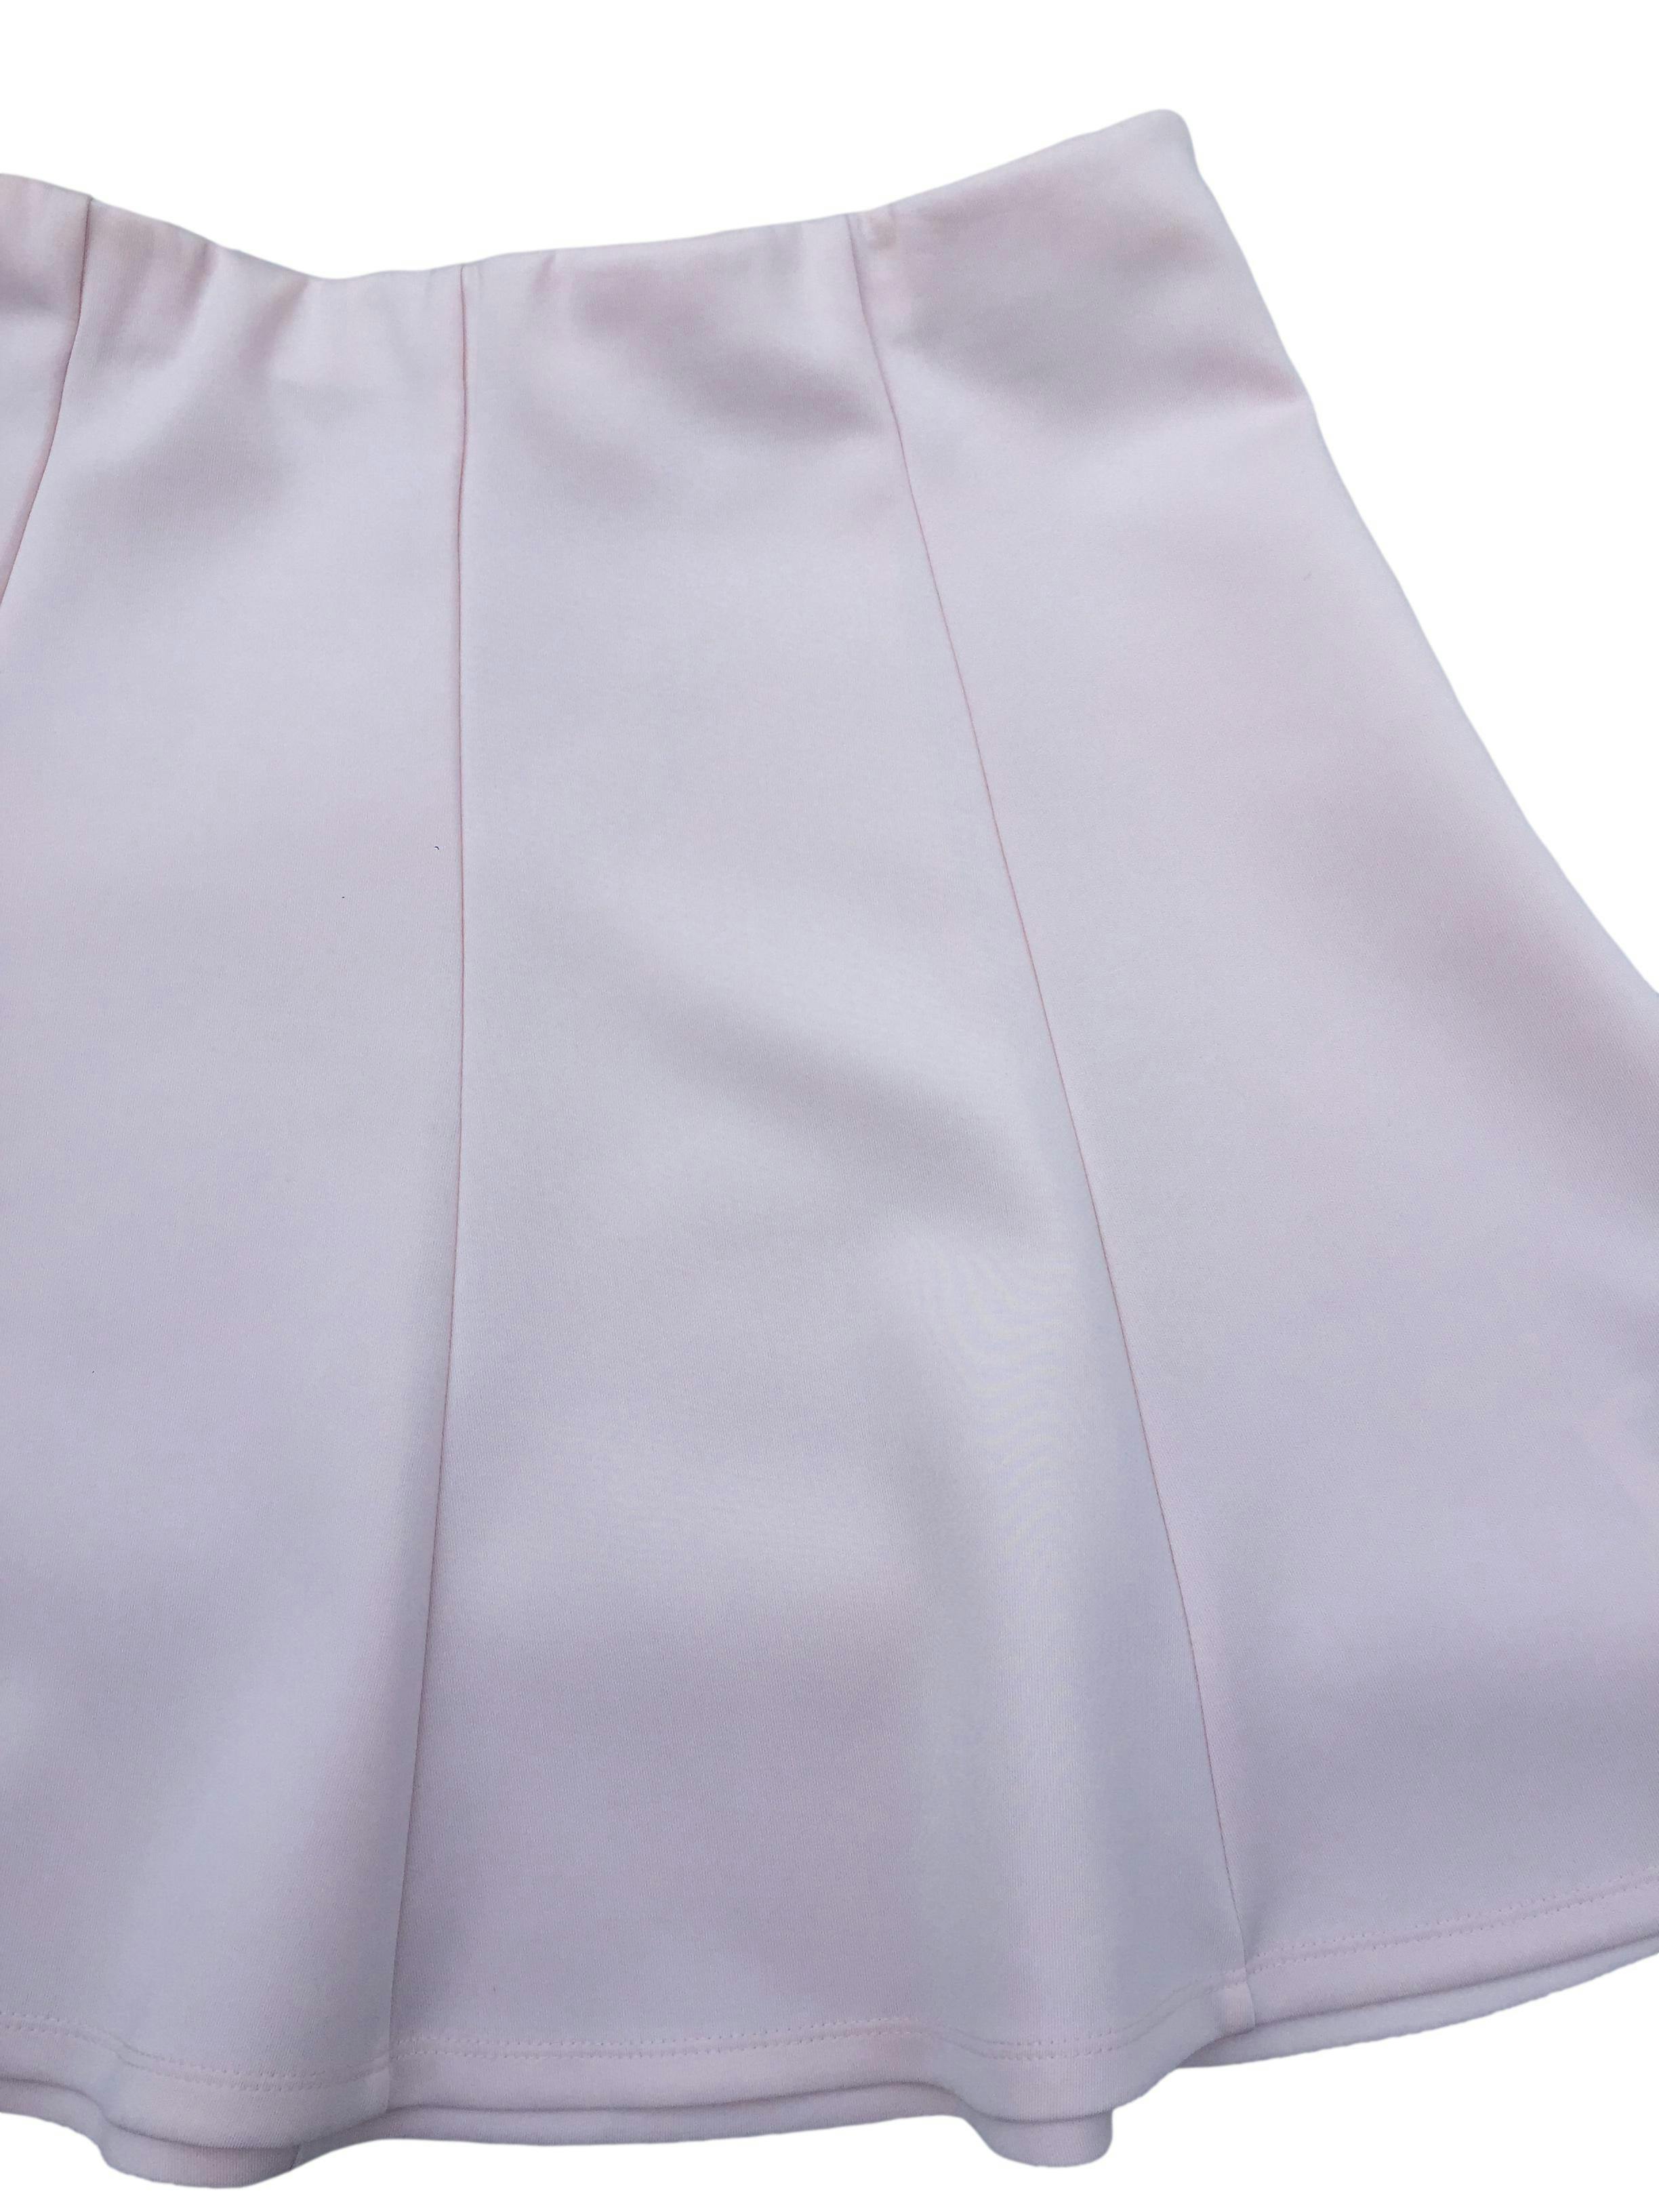 Falda semicircular Index rosa pastel, modelo a piezas con cintura elástica. Cintura 80cm sin estirar, Largo 44cm.